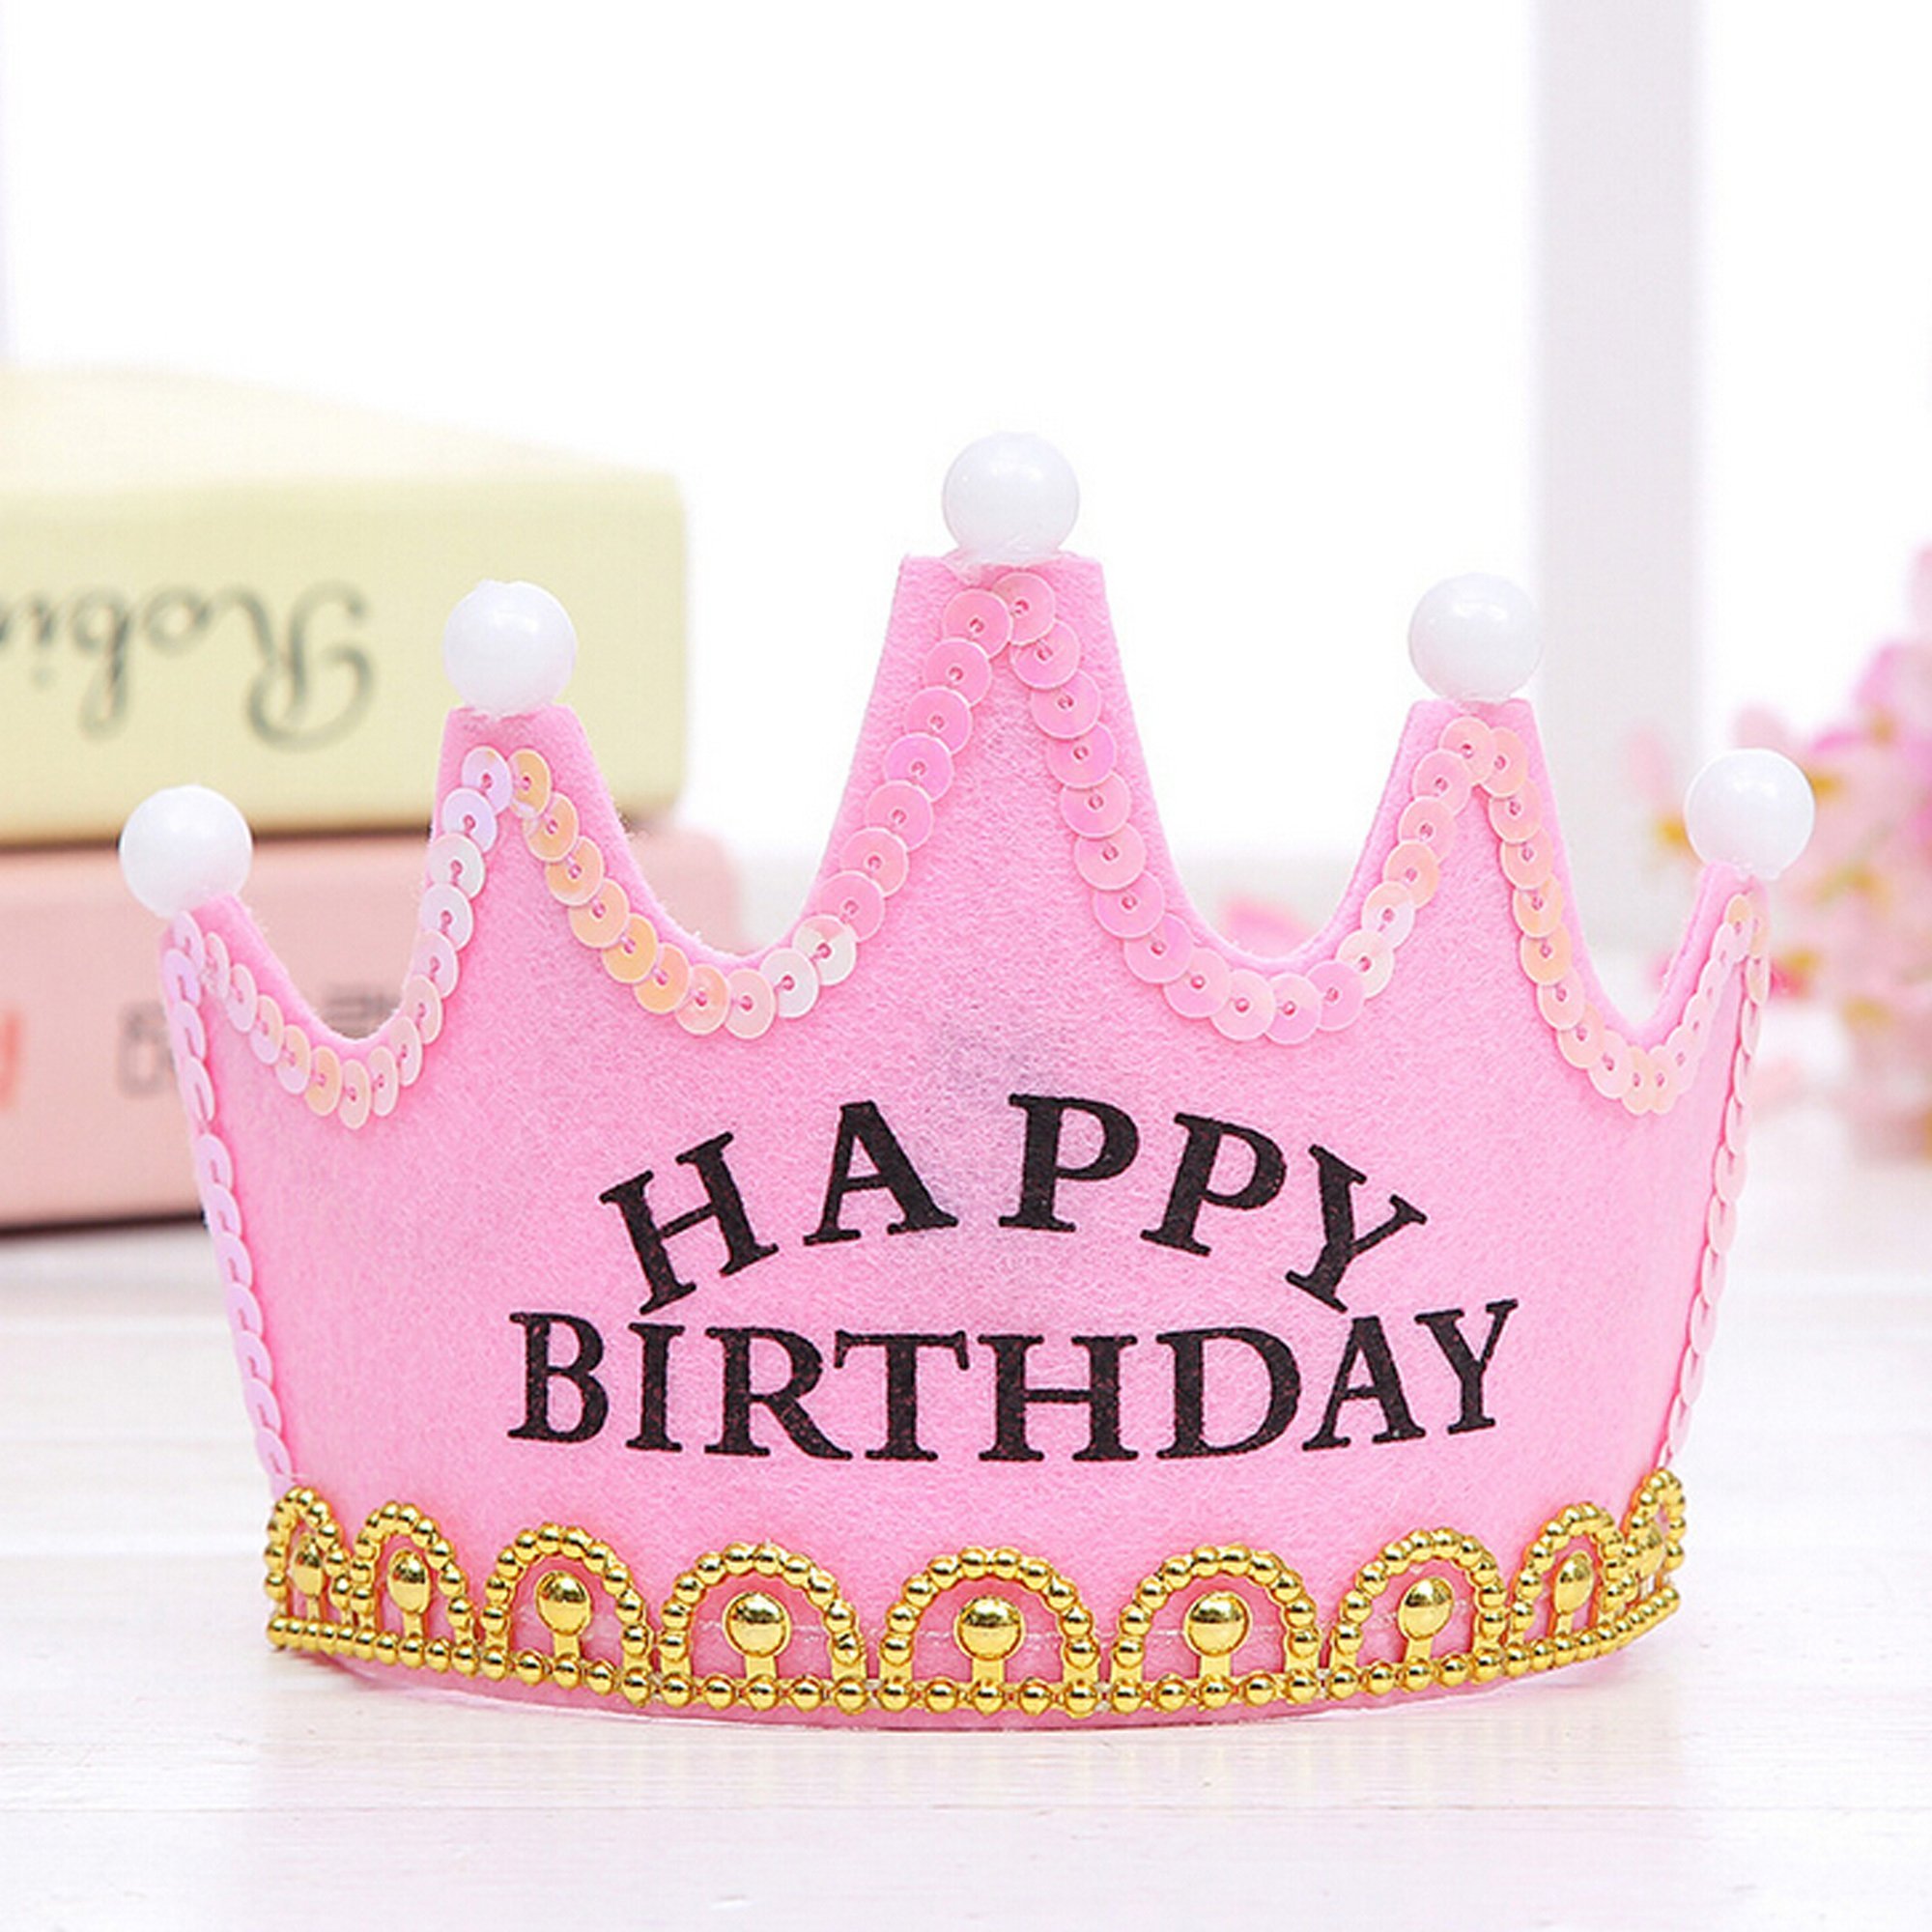 С днем рождения красивую принцессу. День рождения принцессы. С днём рождения принцесу. С днем рождения принцессц. Сслнем рождения ,принцесса.